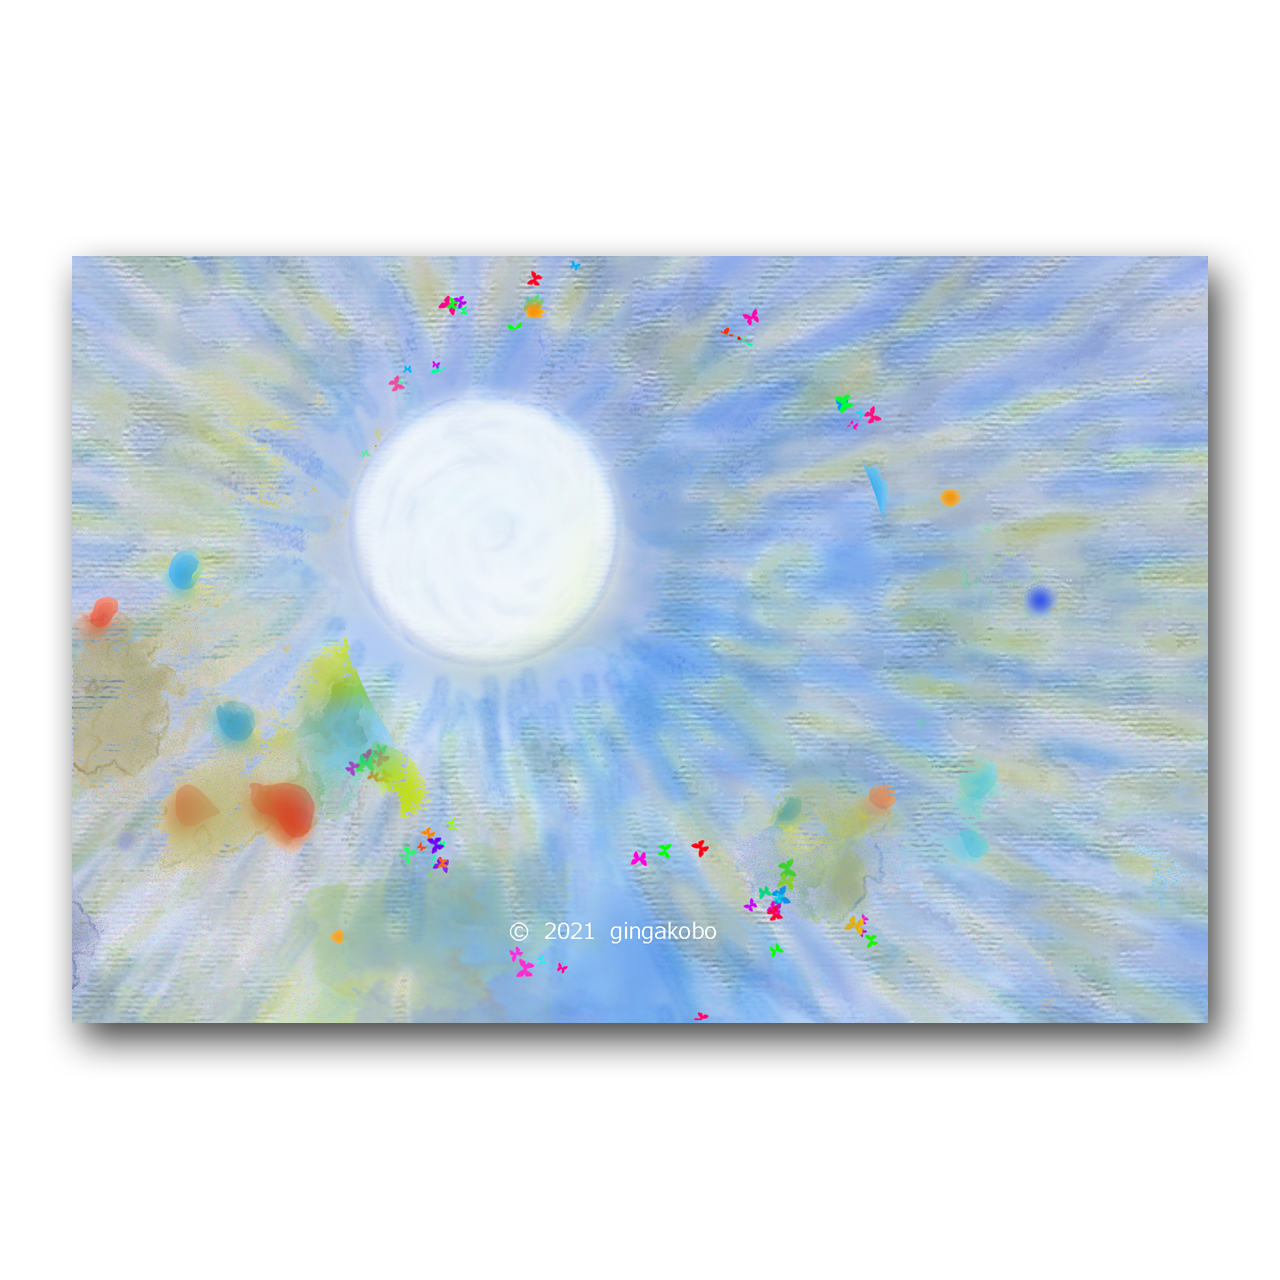 生きとし生けるものを結ぶ 太陽 ほっこり癒しのイラストポストカード2枚組no 1344 Iichi ハンドメイド クラフト作品 手仕事品の通販